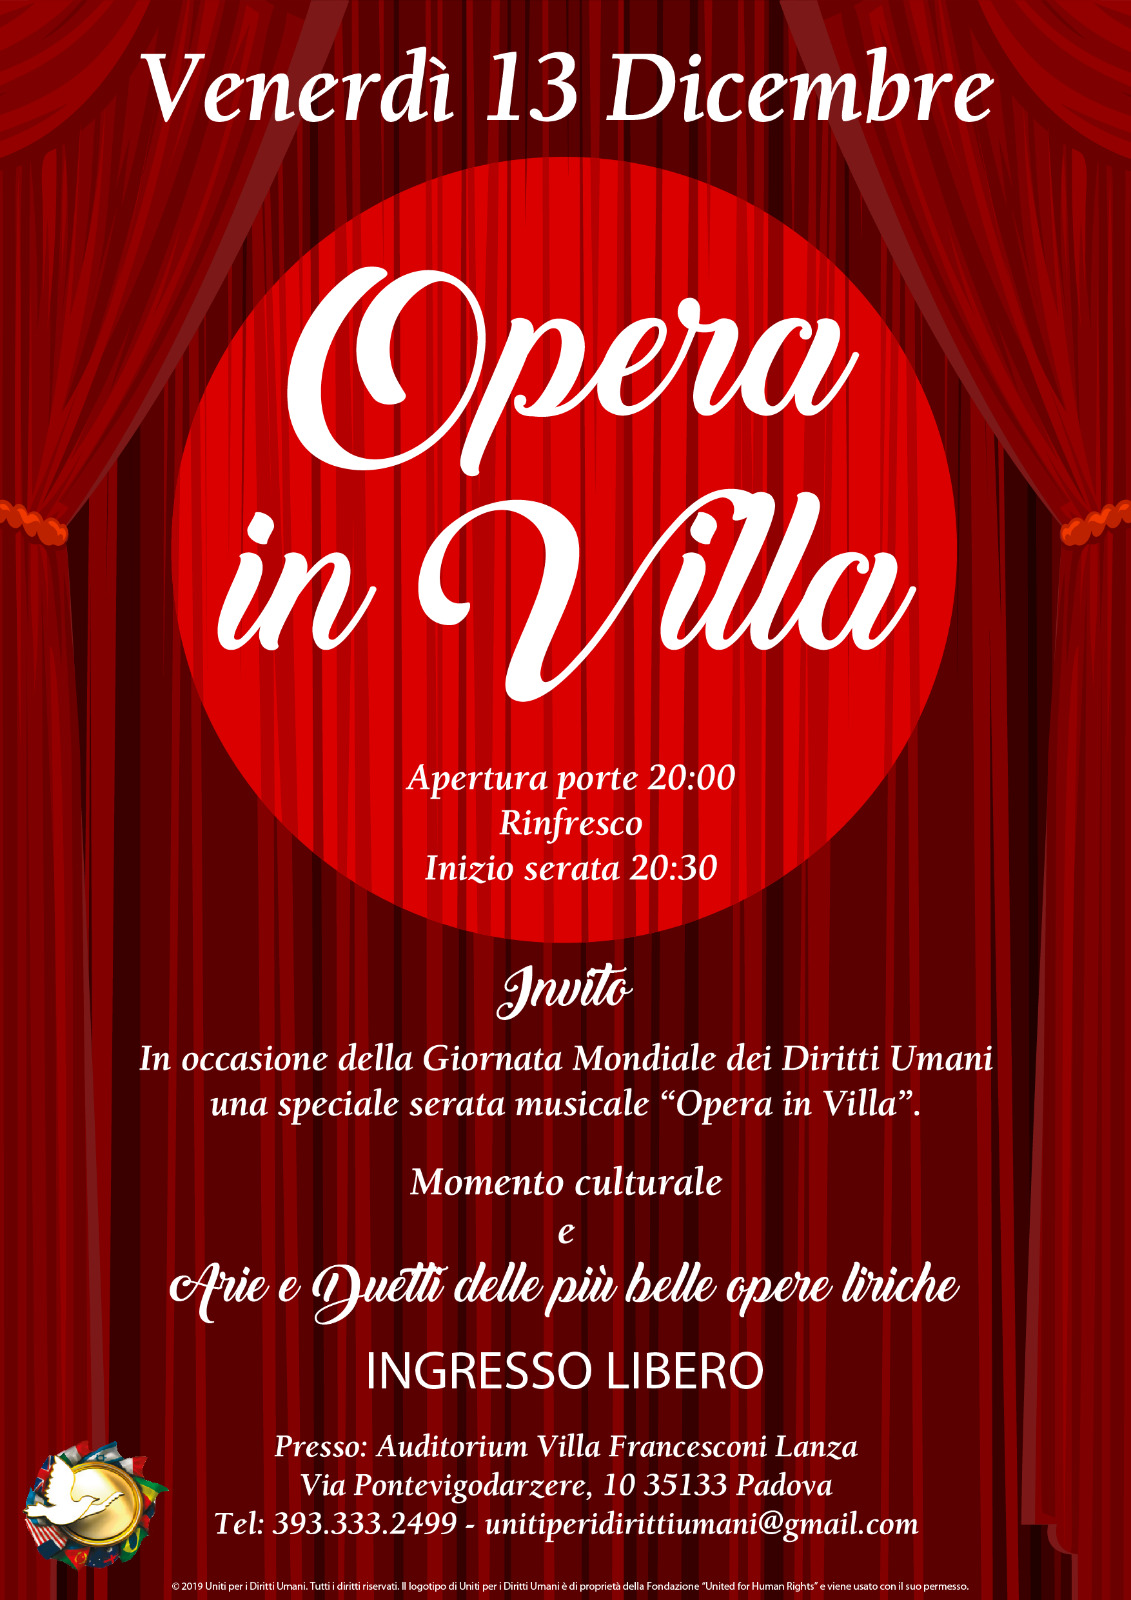 Padova: Opera in villa – Aree e duetti delle più belle opere liriche per celebrare la Giornata Mondiale Per i Diritti Umani 